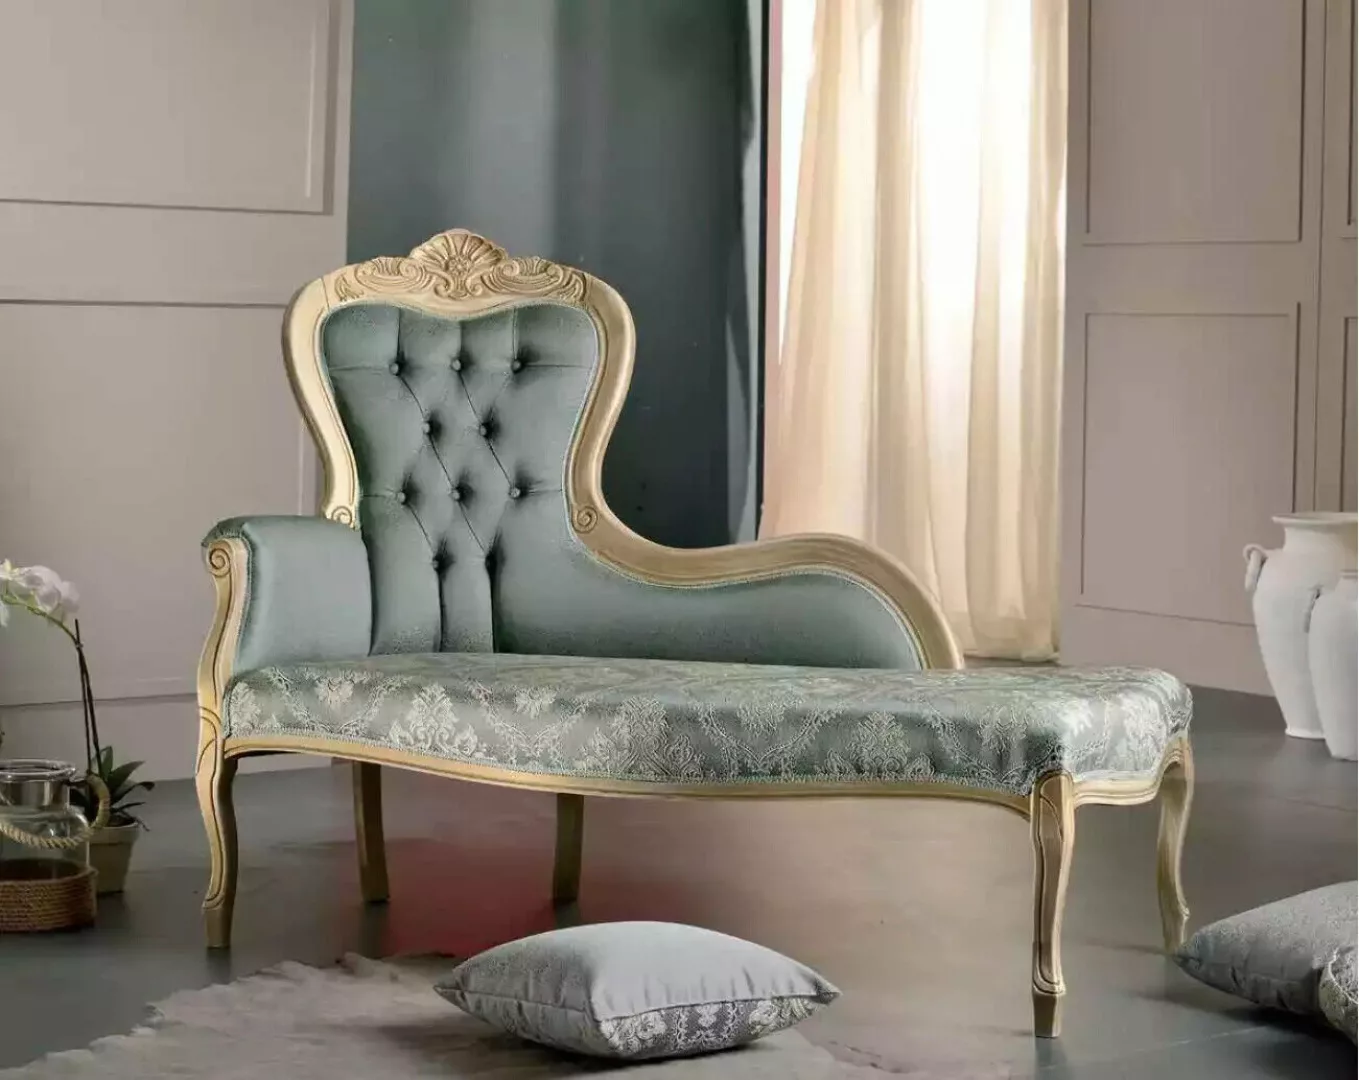 JVmoebel Chaiselongue Luxus Möbel Chaiselongue Wohnzimmer Klassischer Desig günstig online kaufen